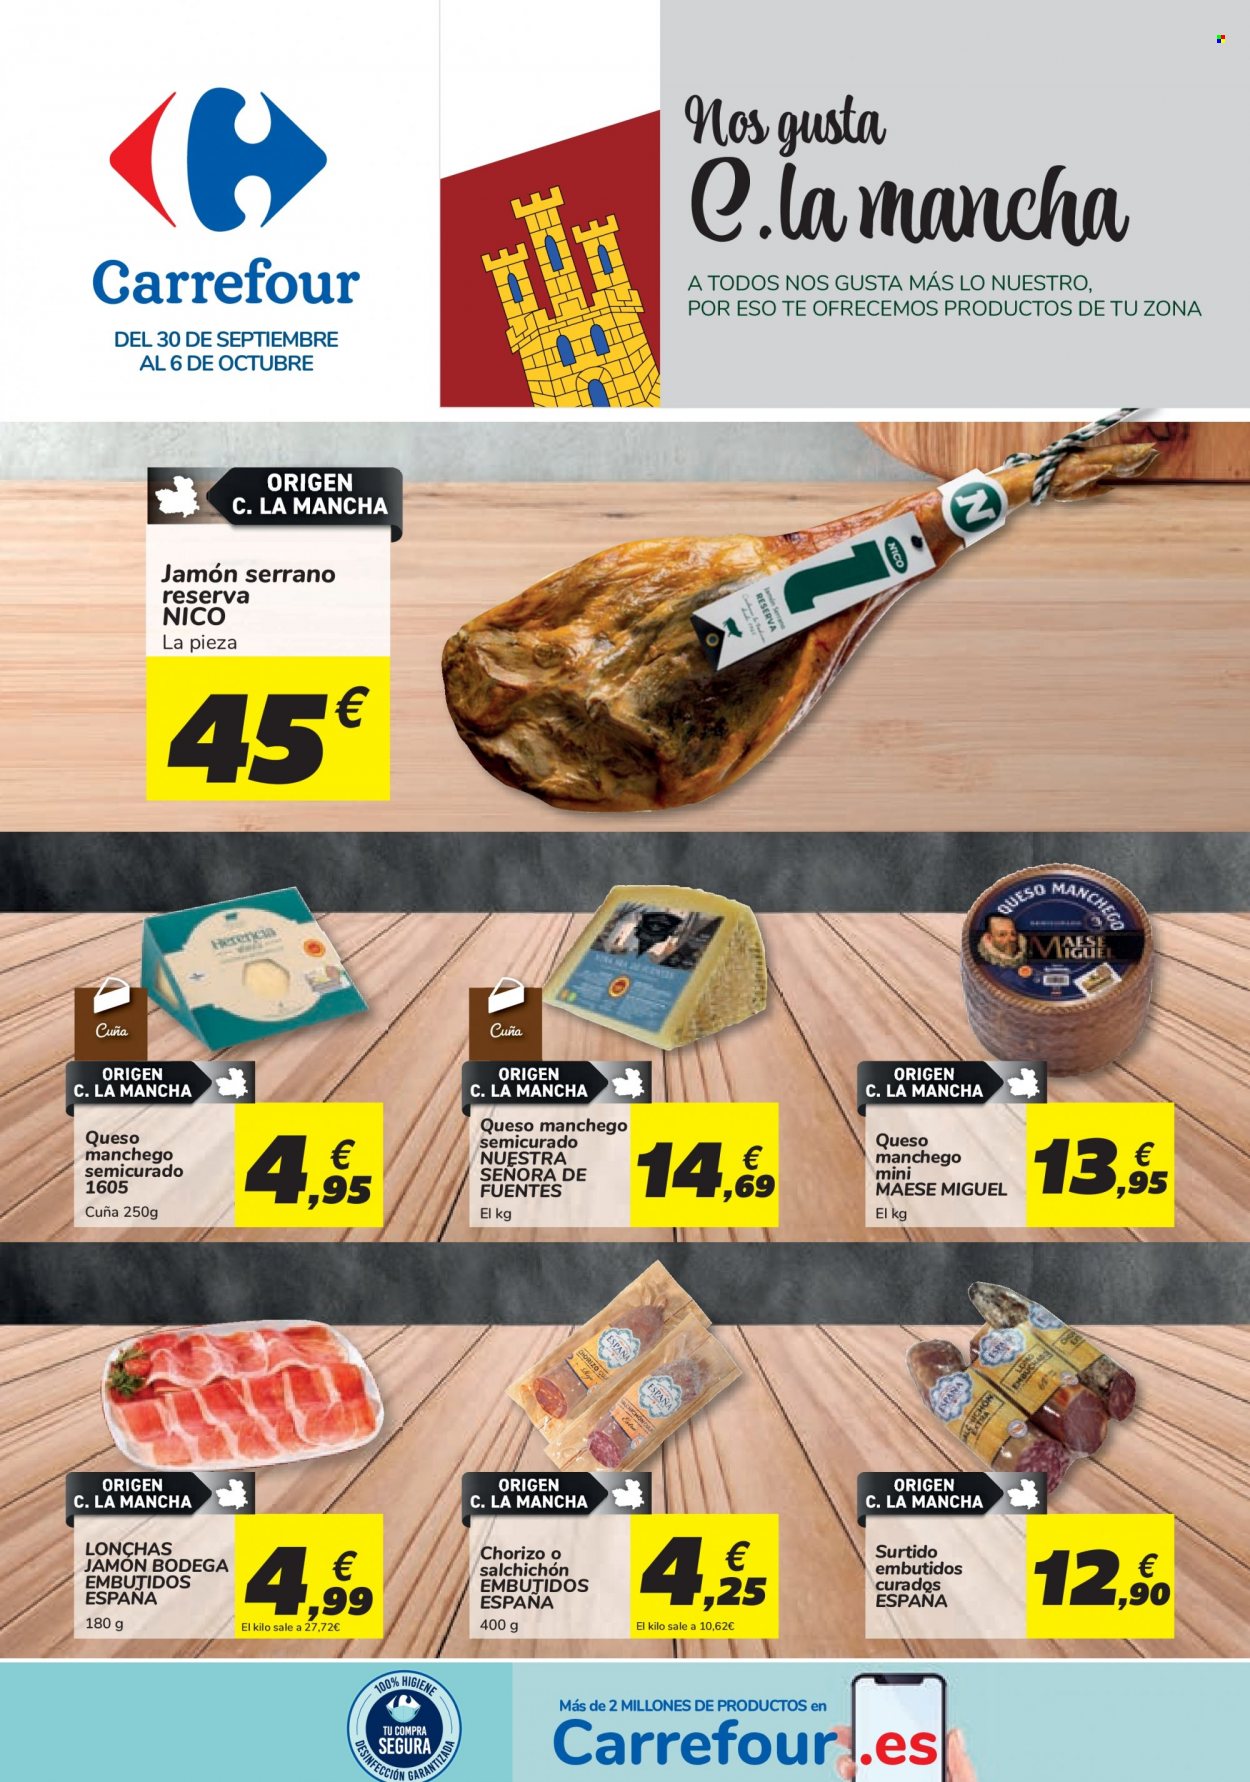 thumbnail - Folleto actual Carrefour - 30/09/21 - 06/10/21 - Ventas - jamón, chorizo, jamón bodega, jamón serrano, salchichón, queso Manchego. Página 1.